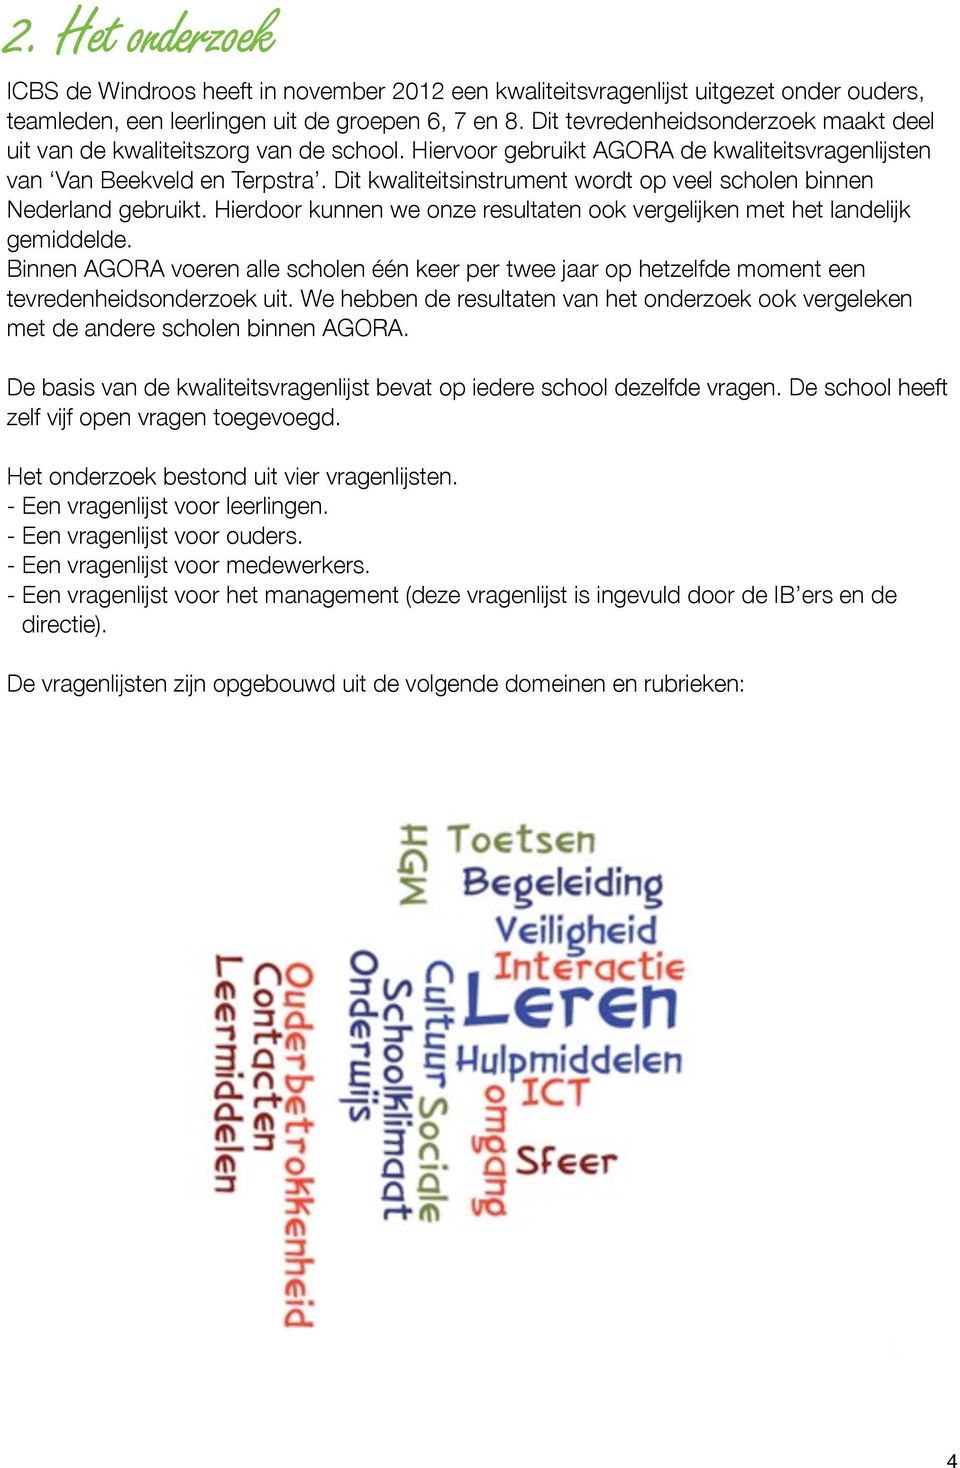 Dit kwaliteitsinstrument wordt op veel scholen binnen Nederland gebruikt. Hierdoor kunnen we onze resultaten ook vergelijken met het landelijk gemiddelde.